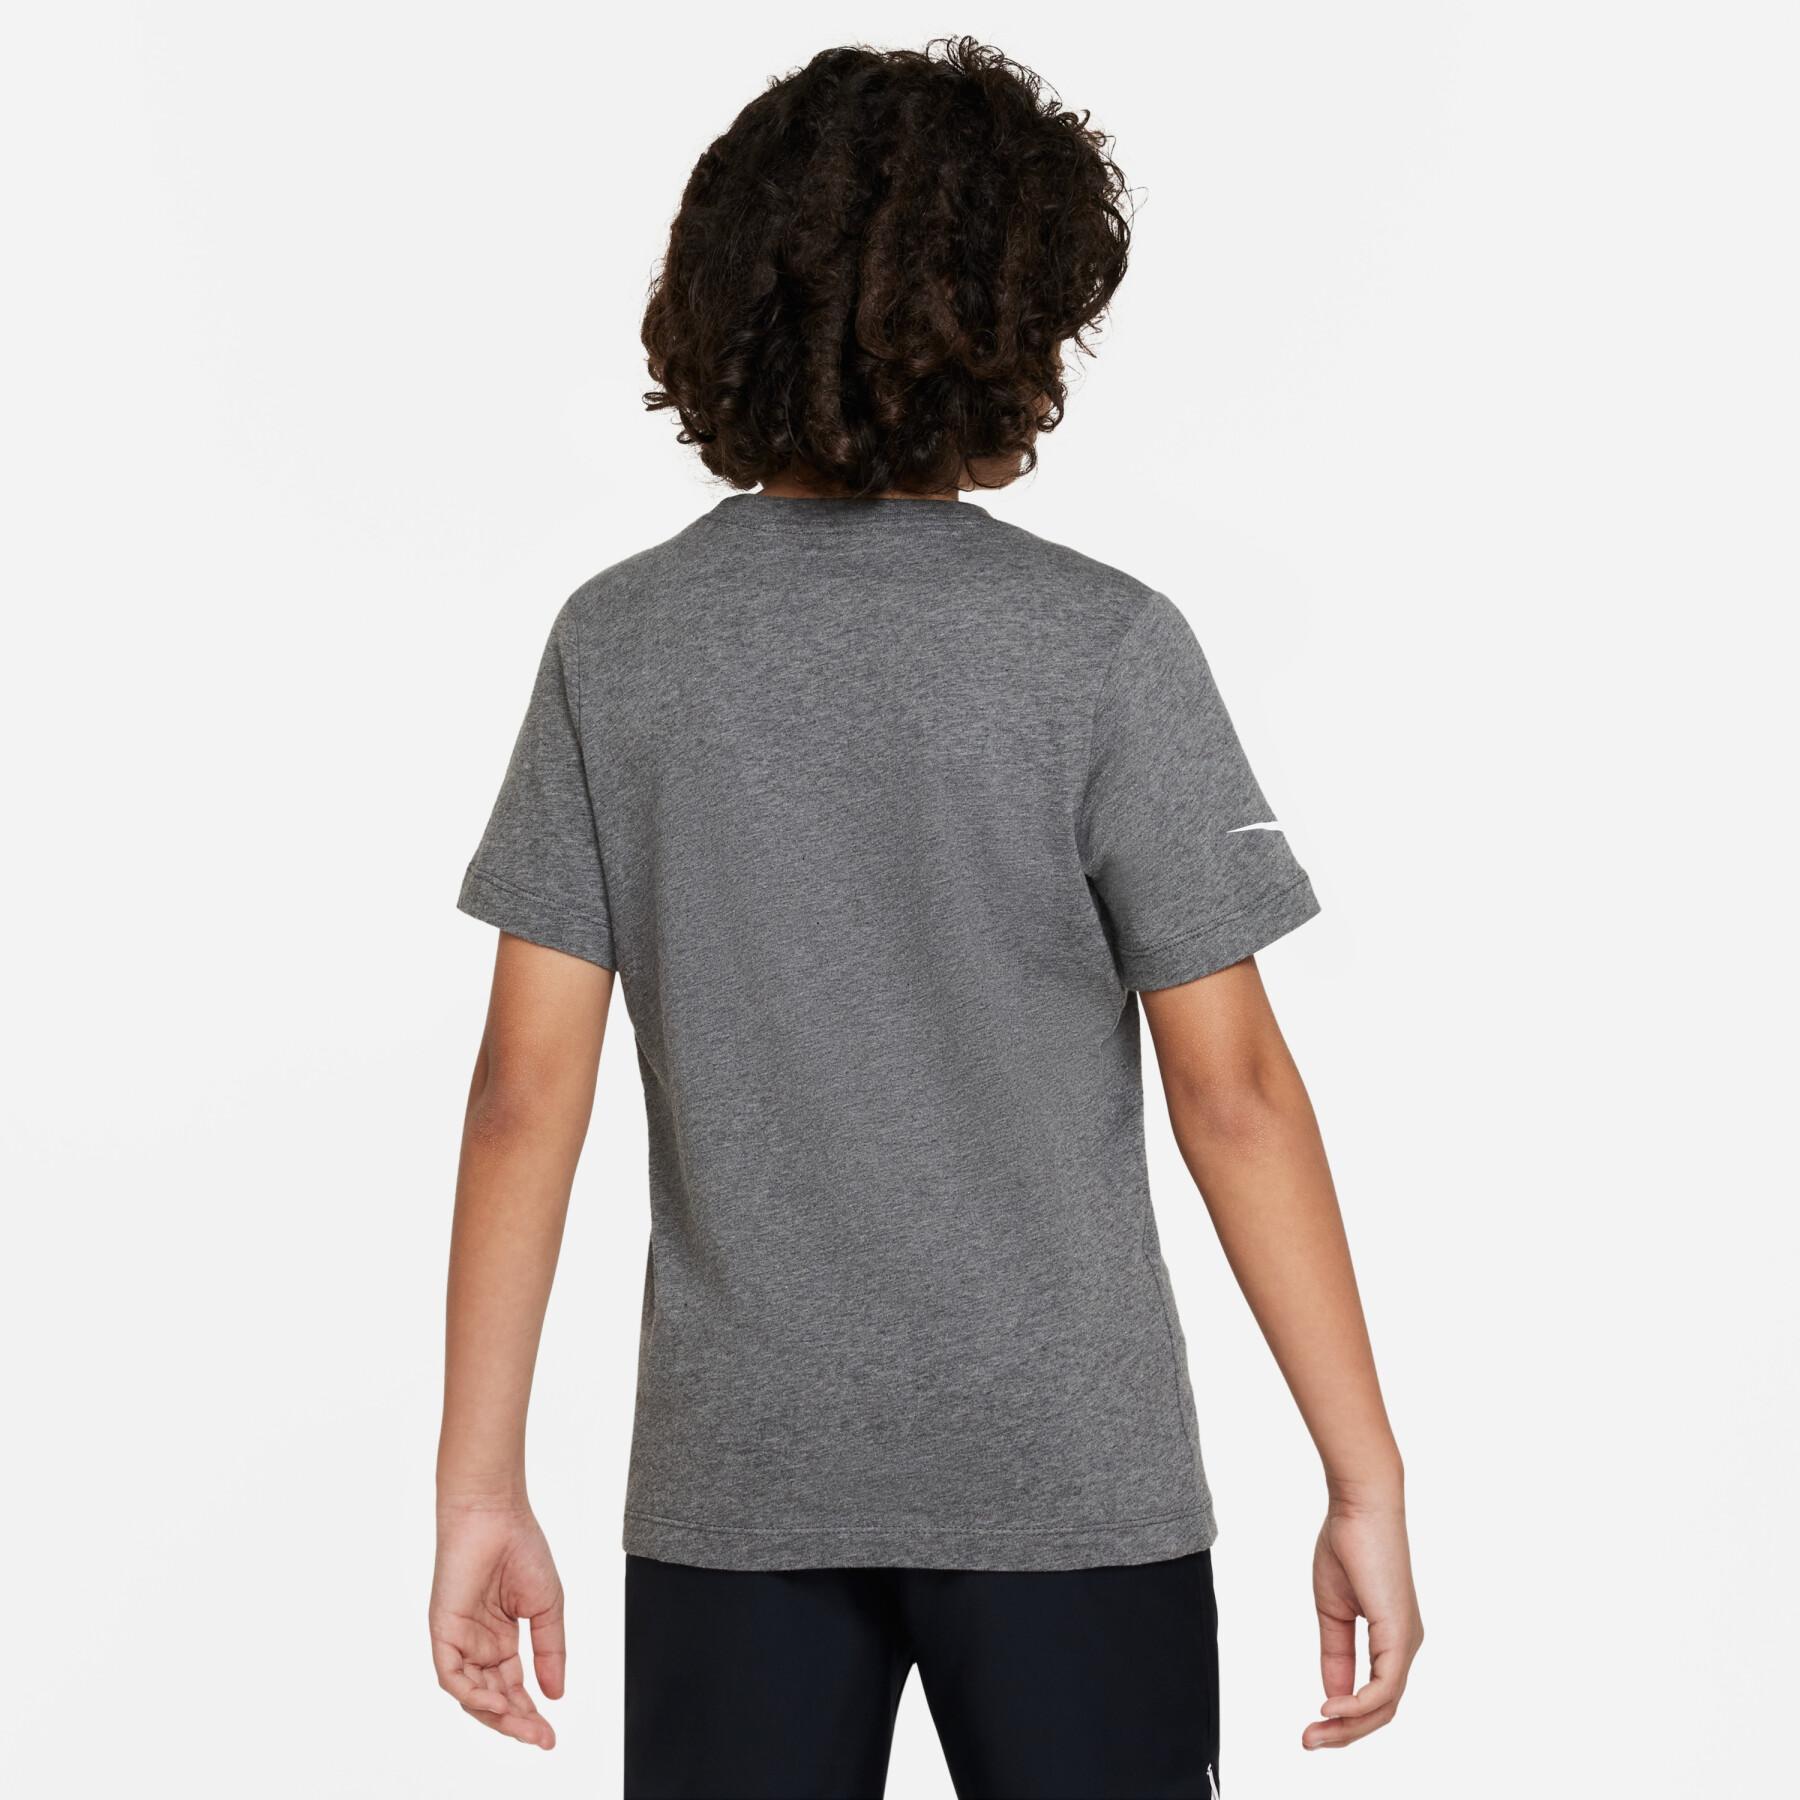 T-shirt criança Nike Park20